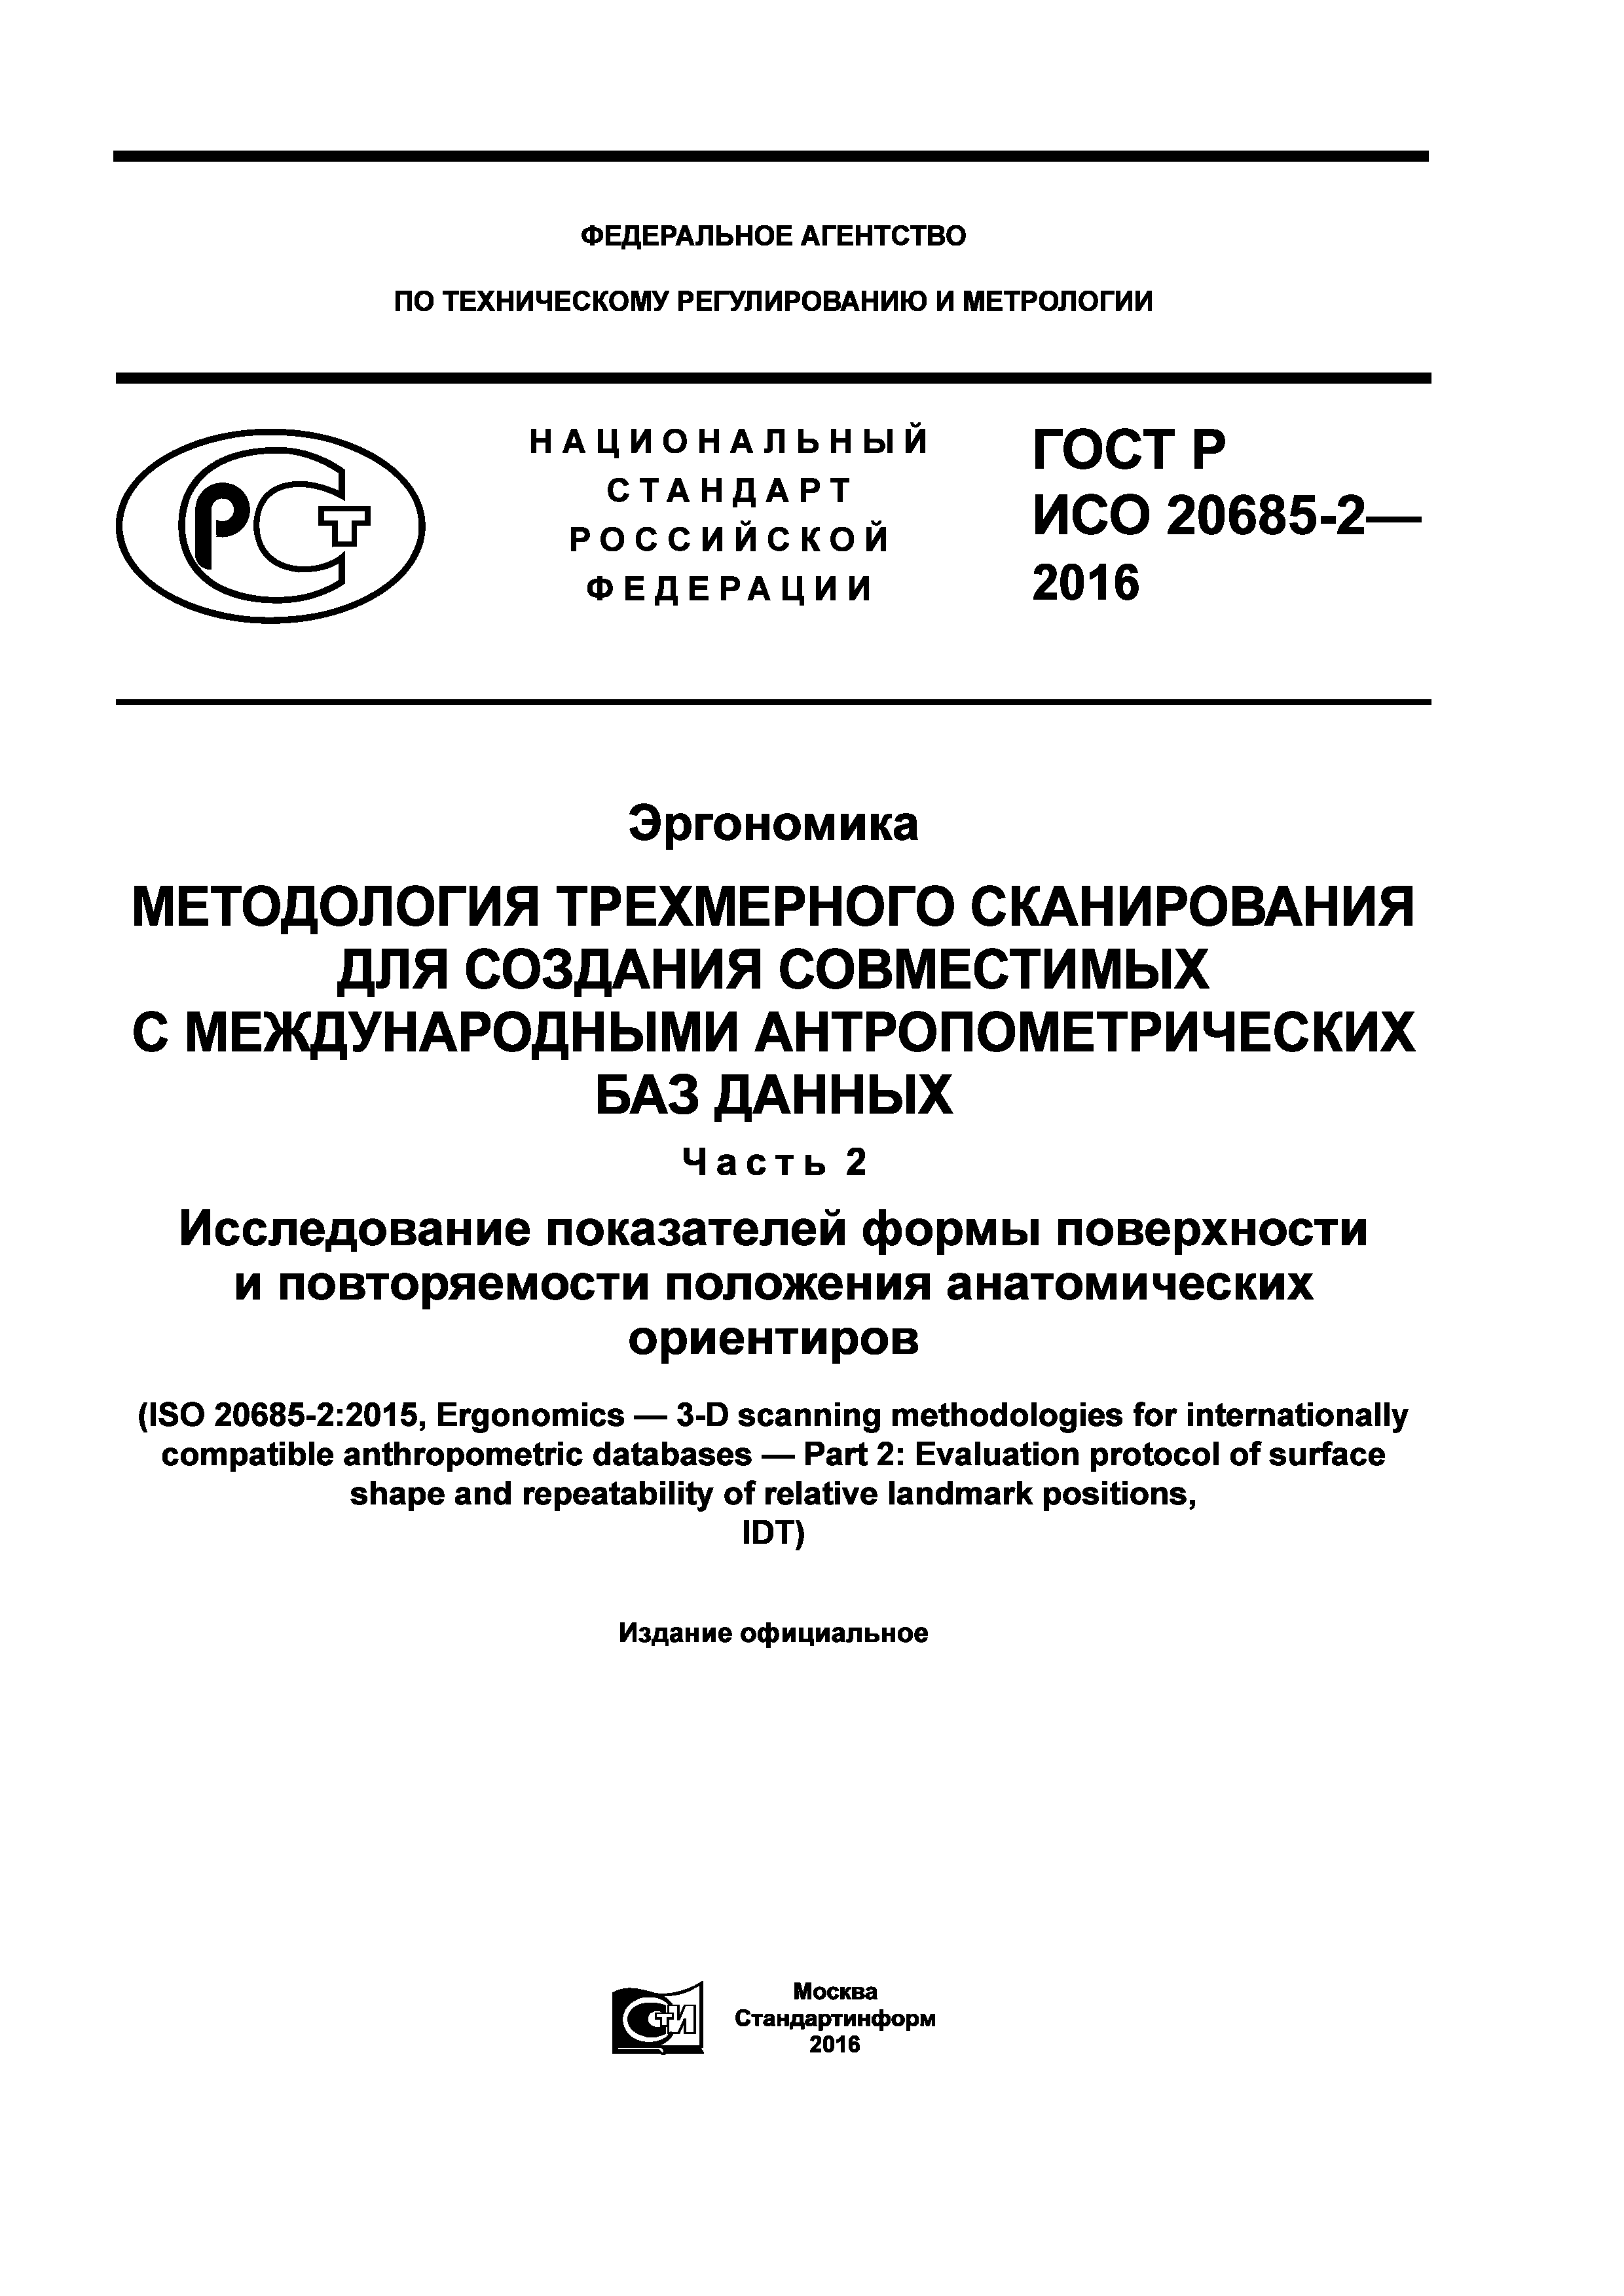 ГОСТ Р ИСО 20685-2-2016